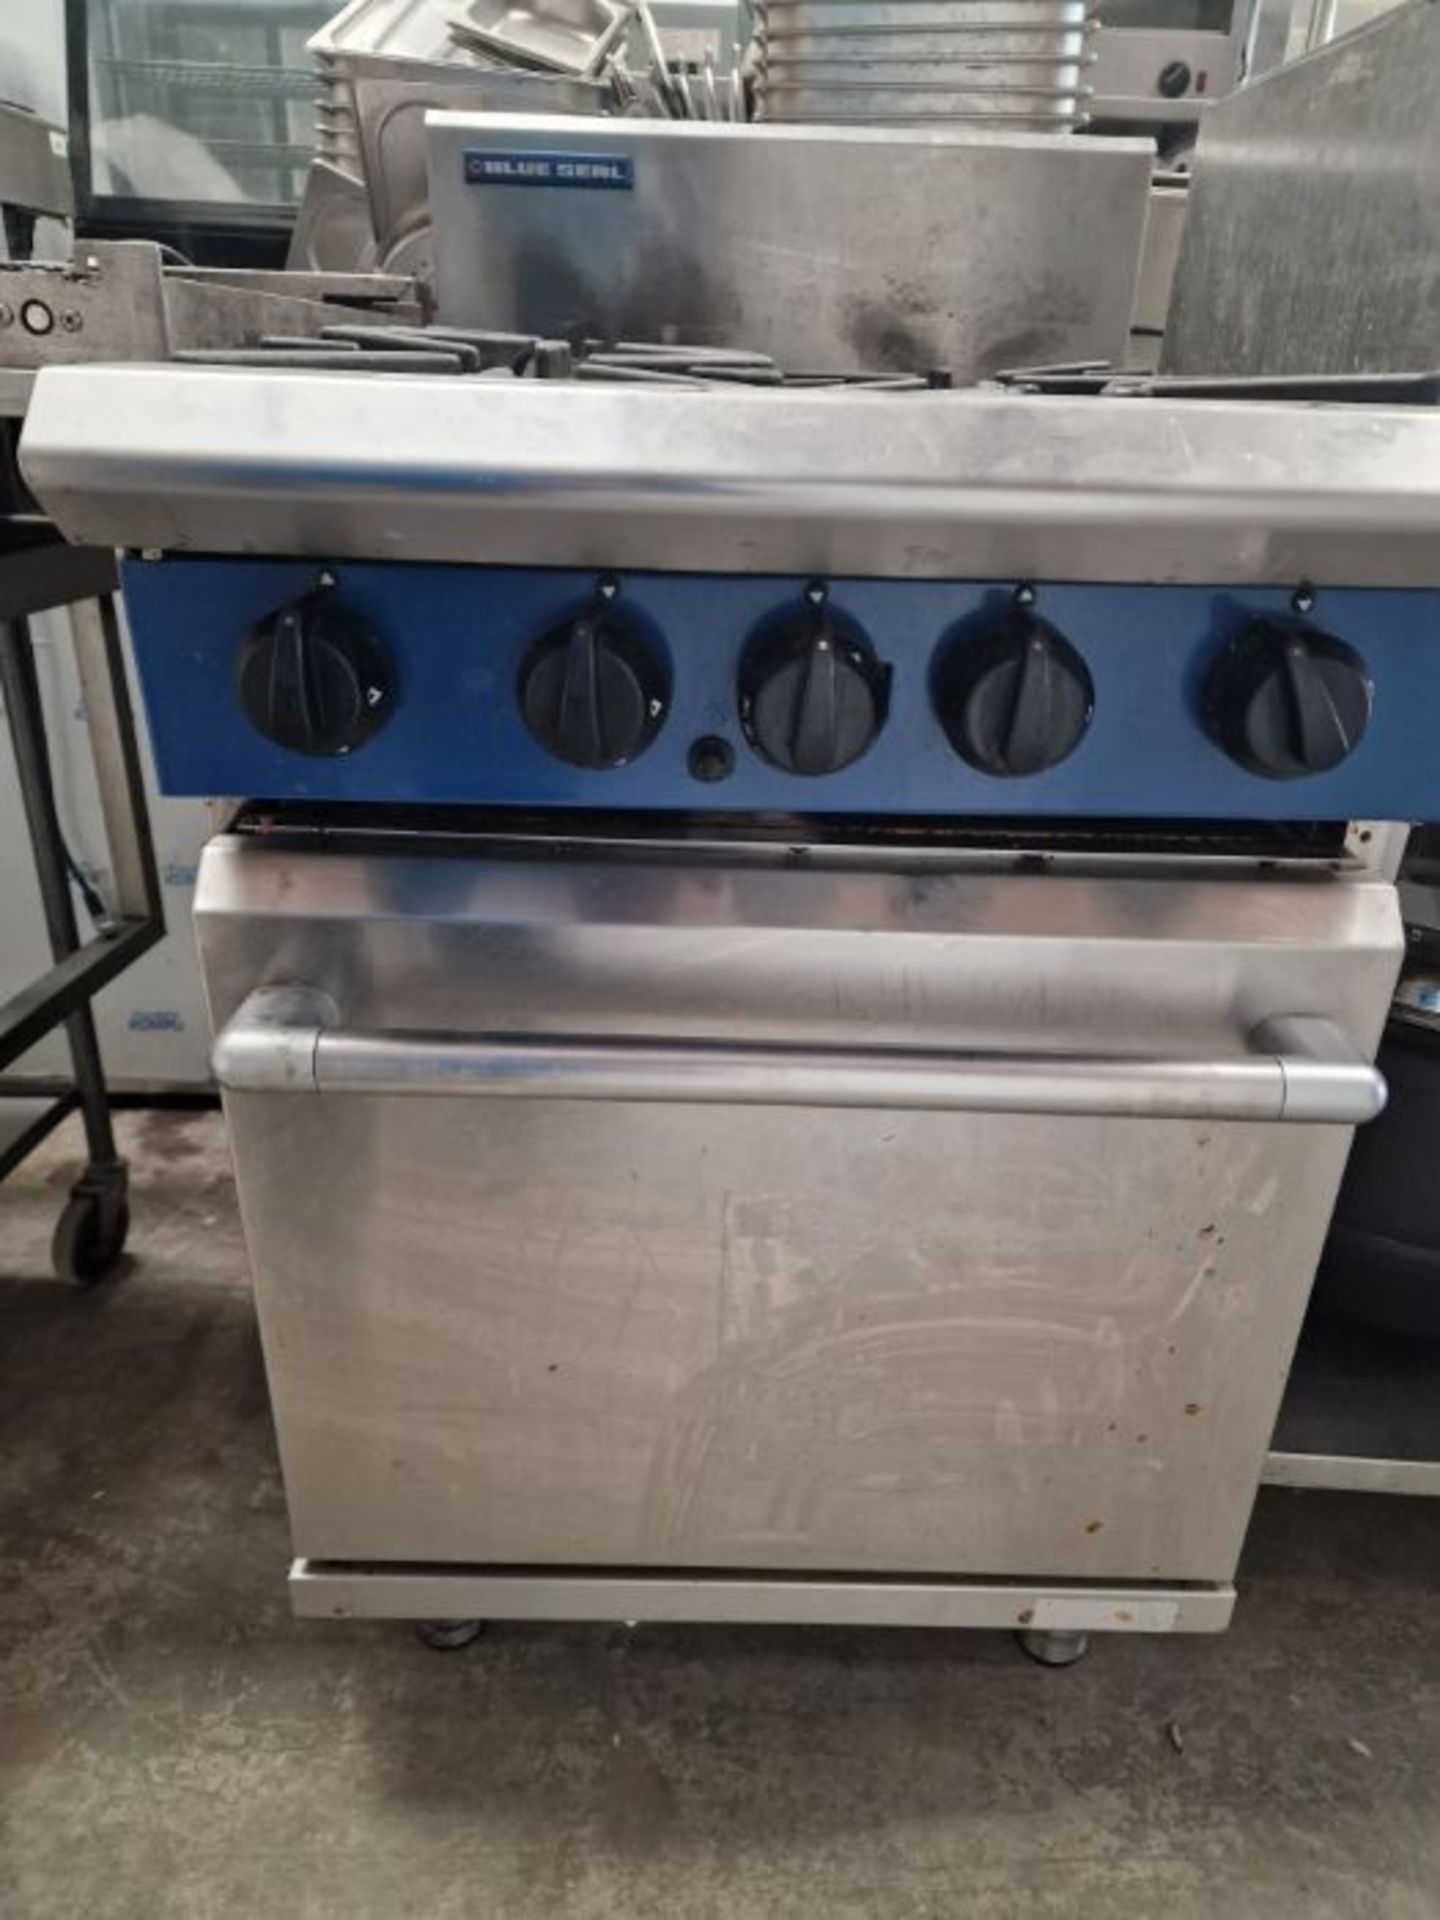 Blue seal 4 burner cooking range. - Image 3 of 3